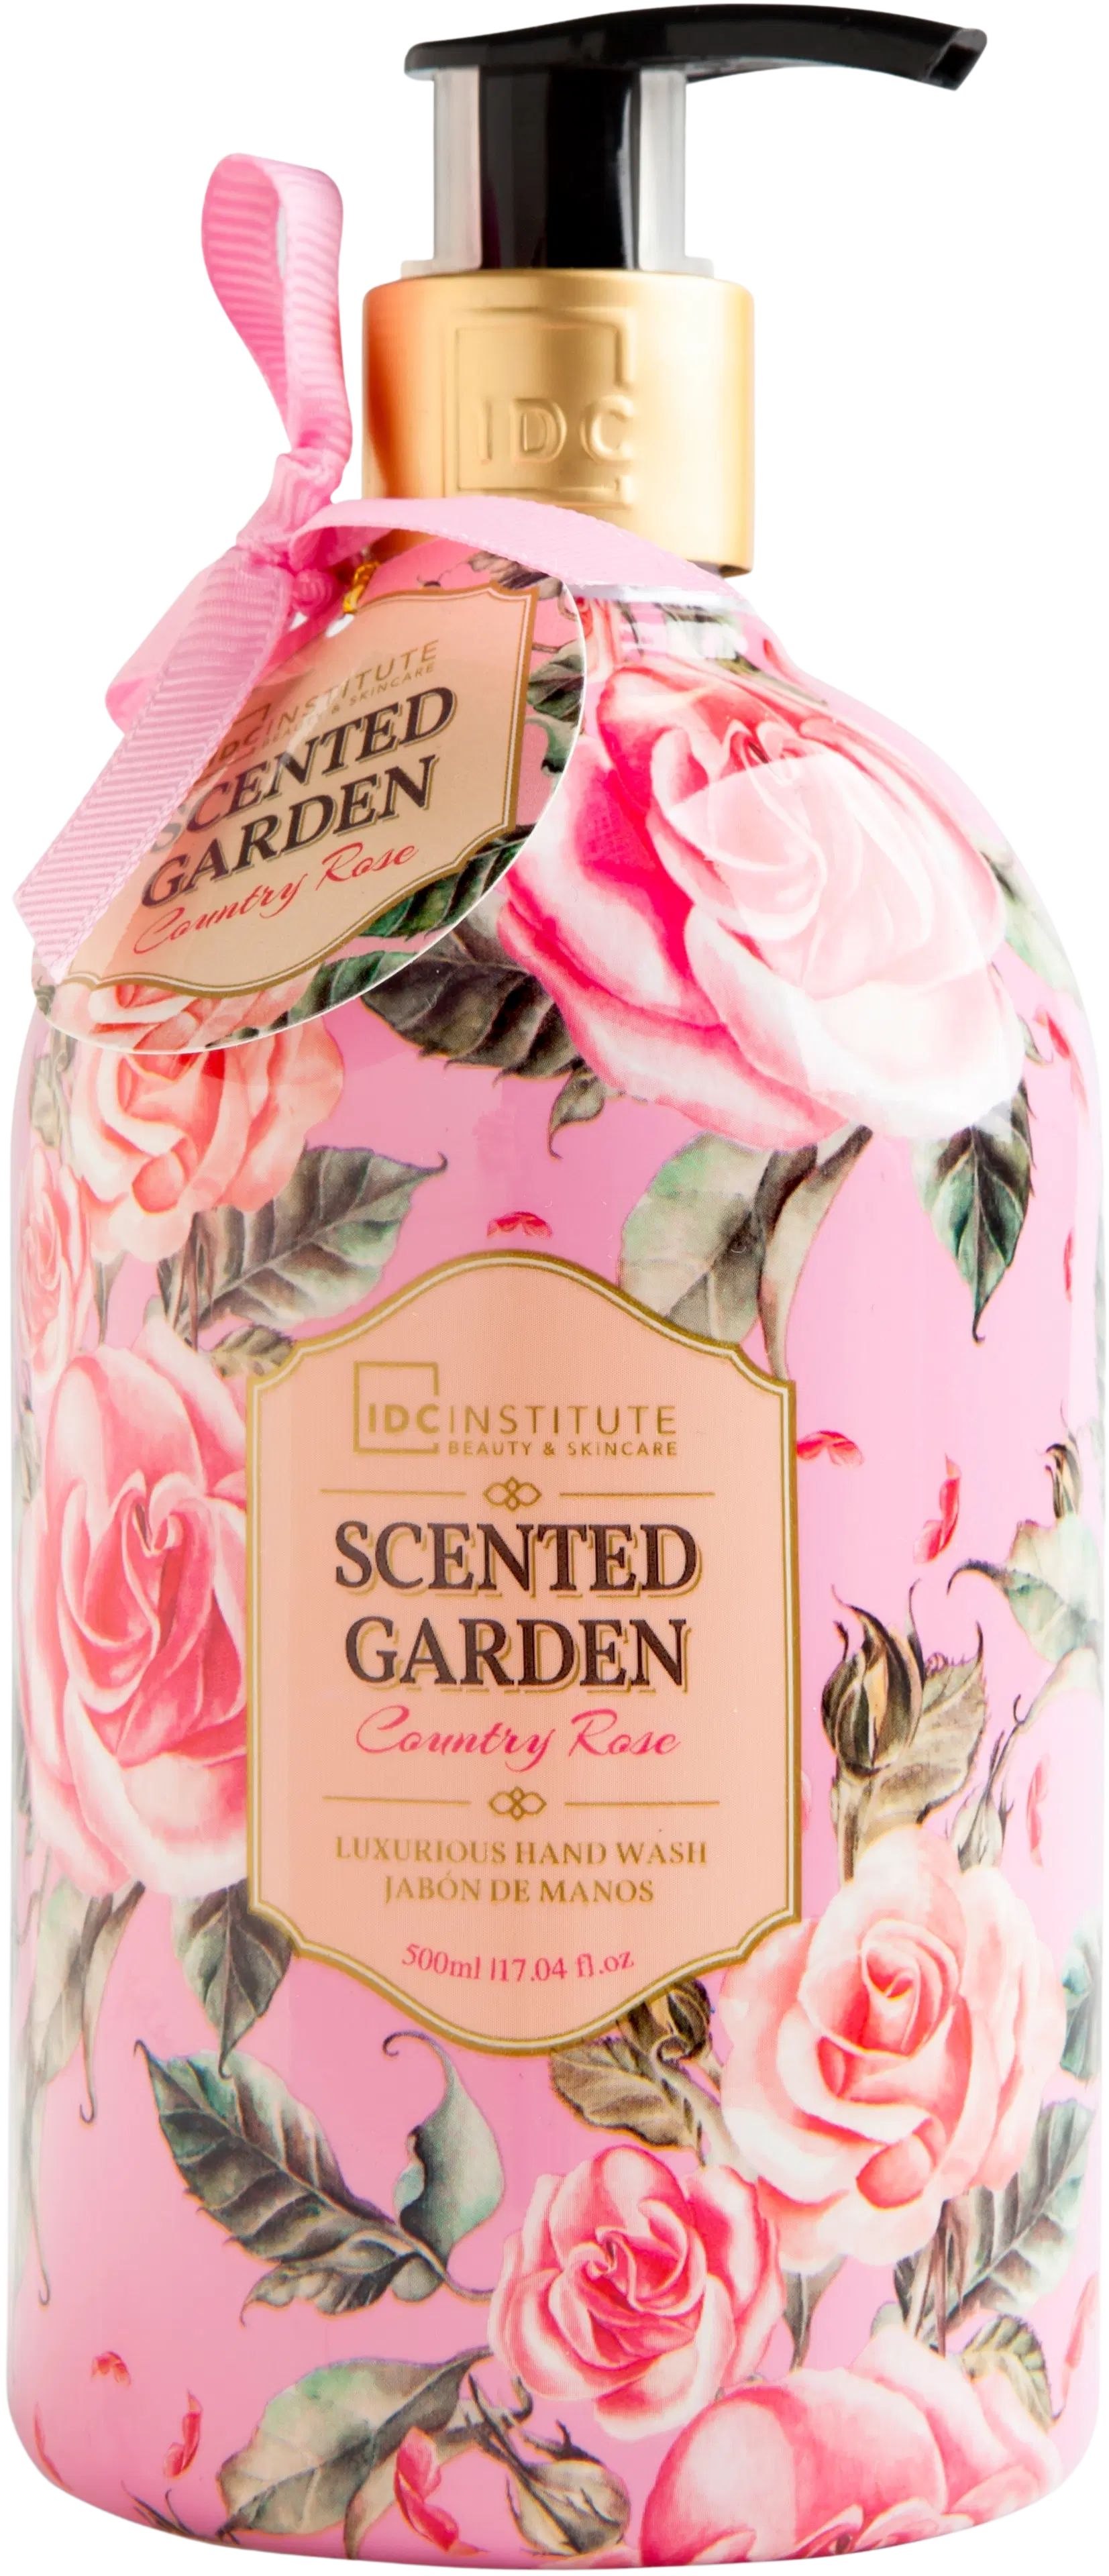 IDC INSTITUTE Scented Garden Country Rose käsisaippua 500 ml